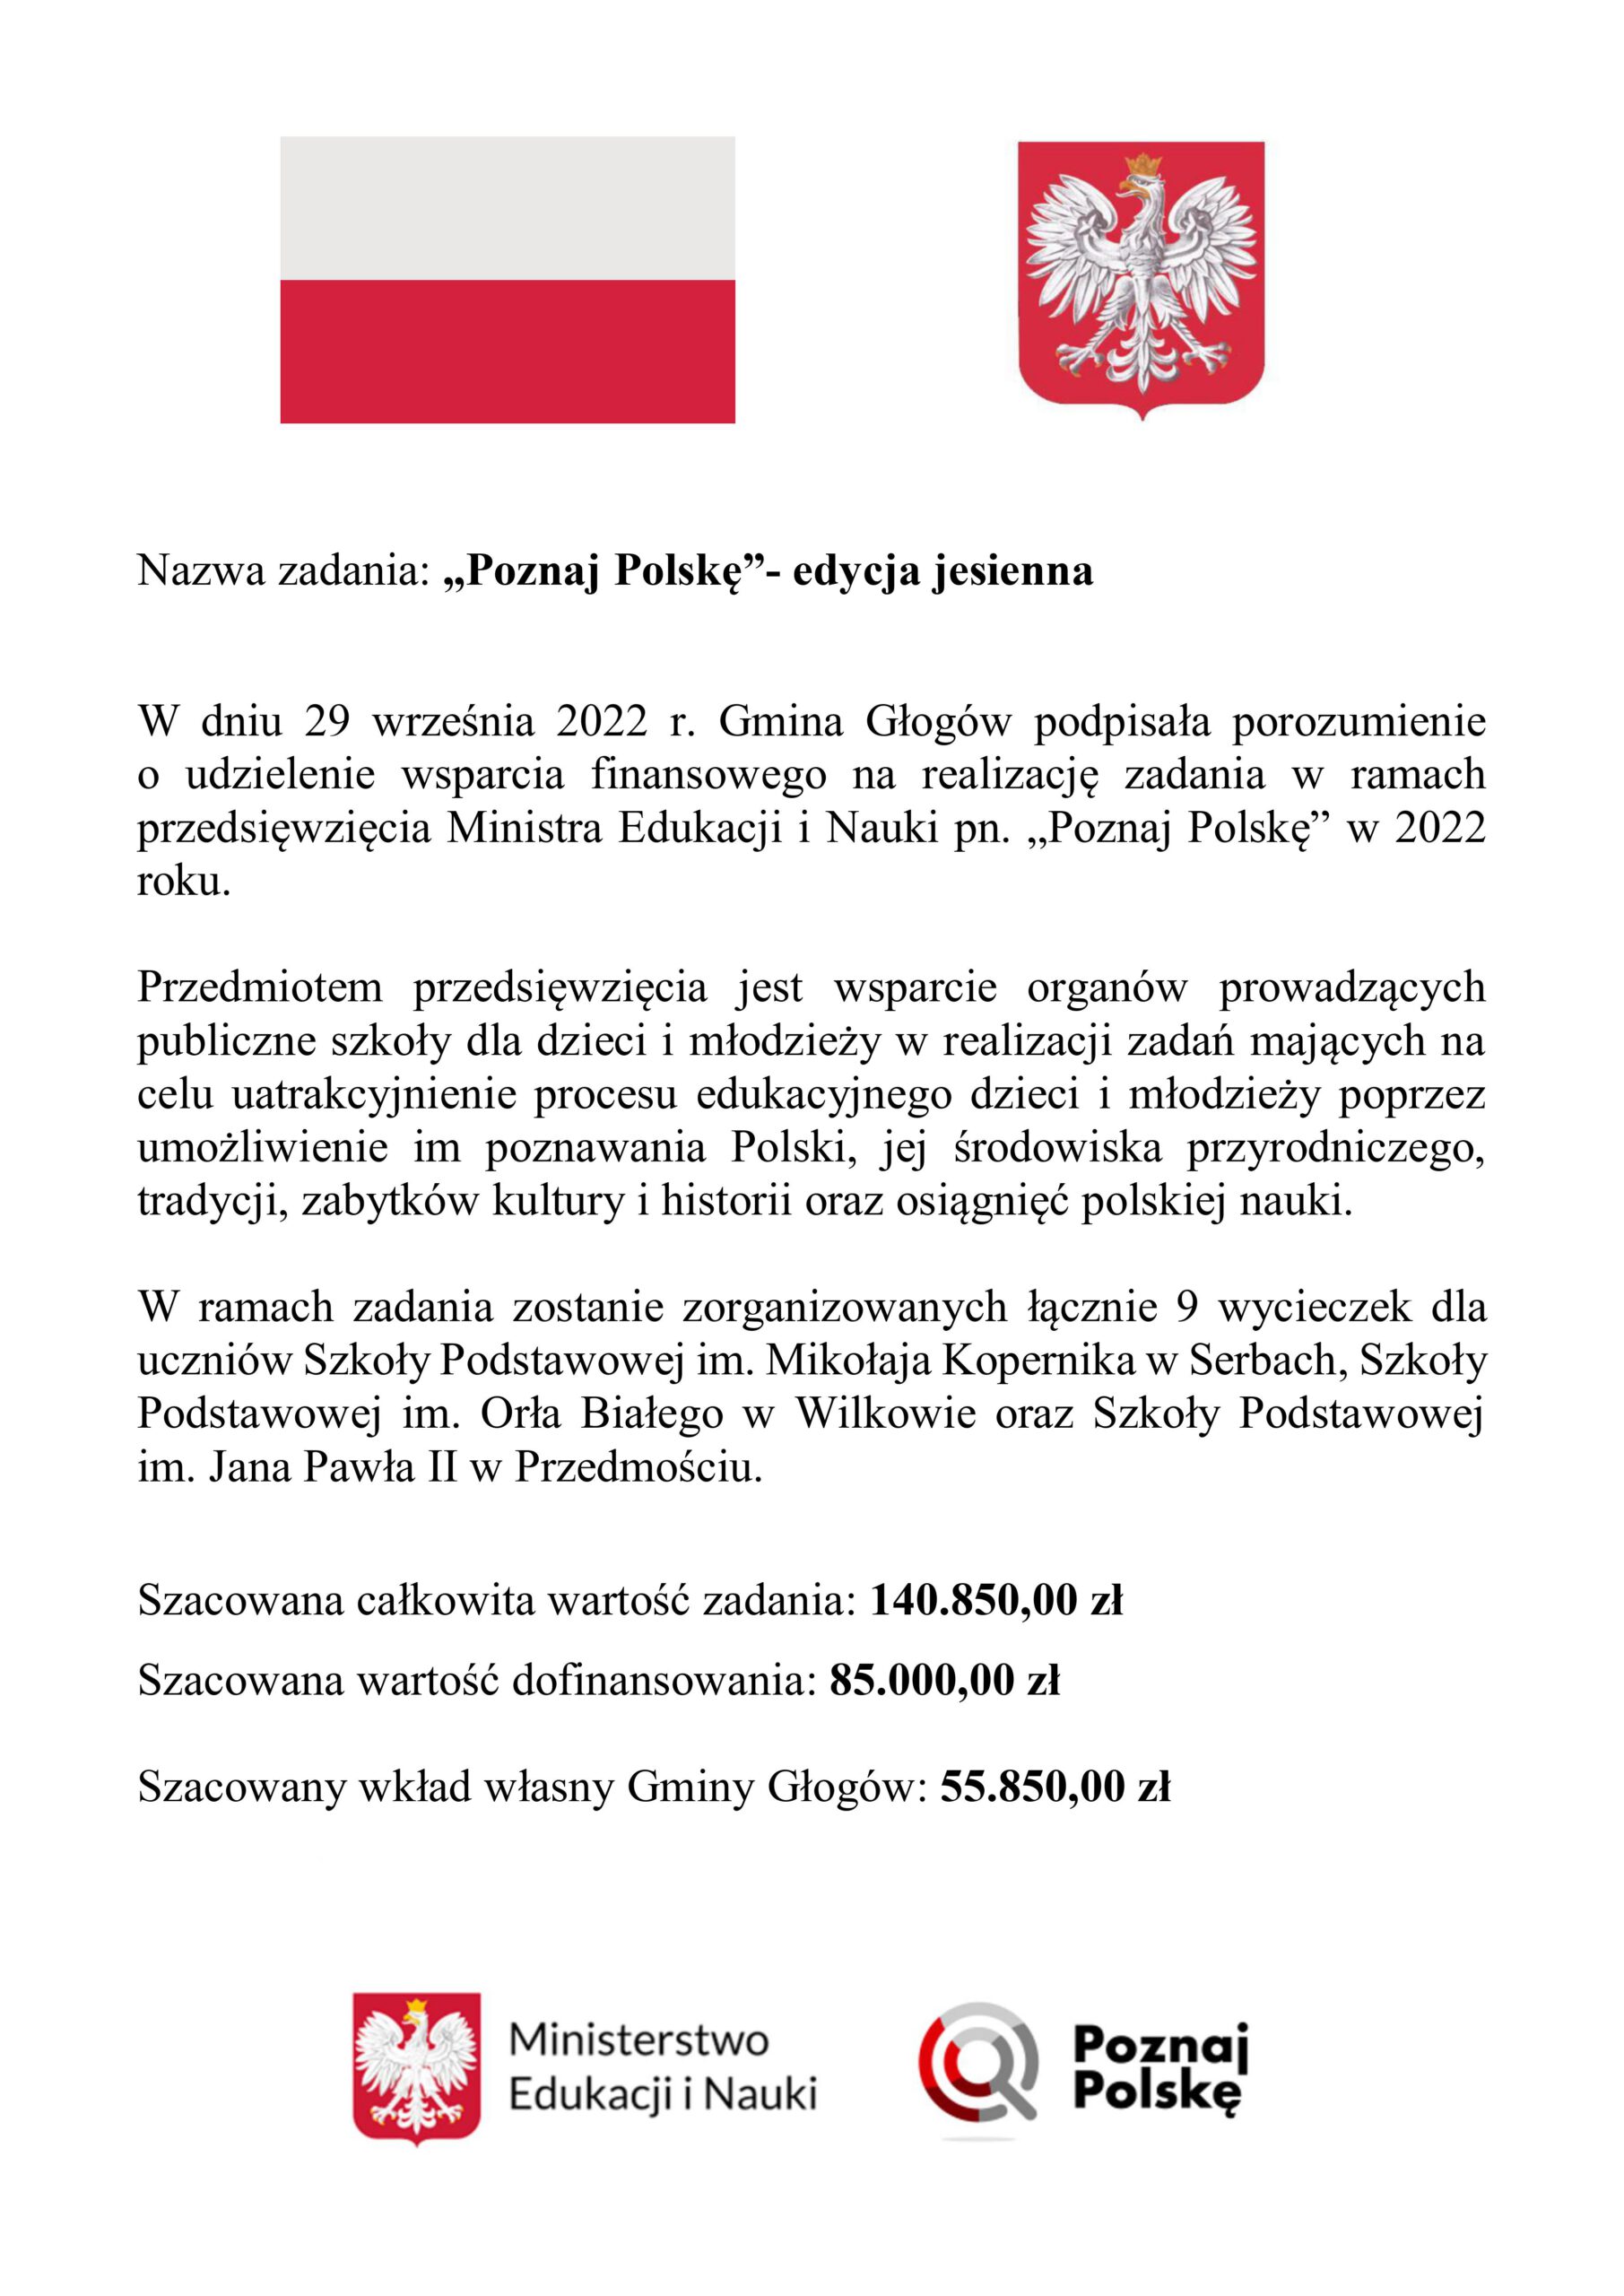 Plakat zadania Poznaj Polskę edycji jesiennej